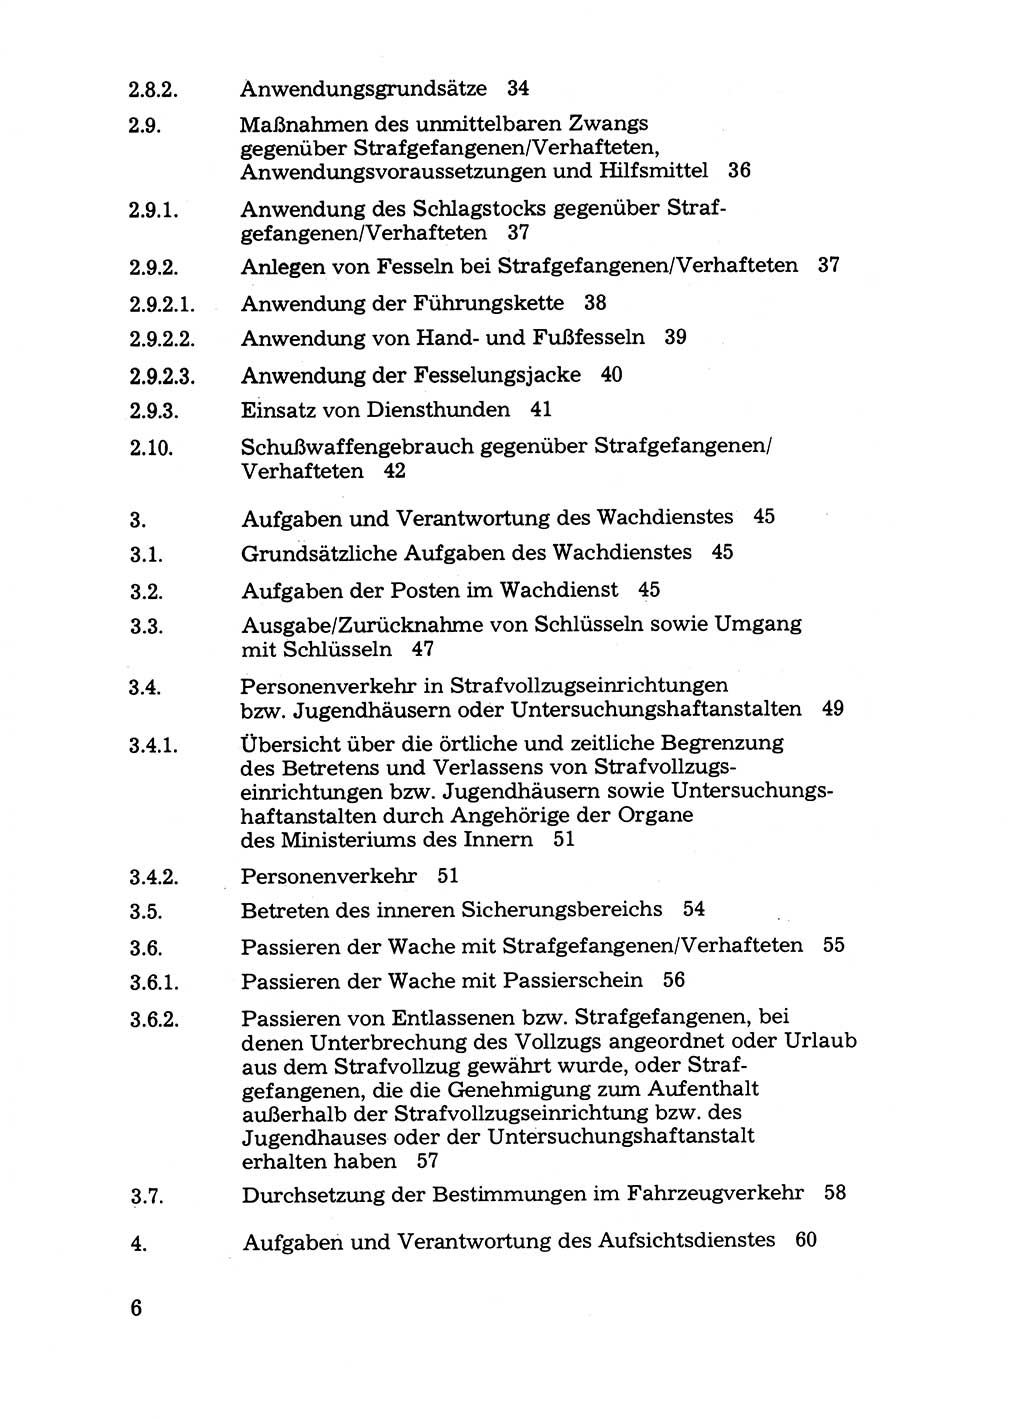 Handbuch für operative Dienste, Abteilung Strafvollzug (SV) [Ministerium des Innern (MdI) Deutsche Demokratische Republik (DDR)] 1981, Seite 6 (Hb. op. D. Abt. SV MdI DDR 1981, S. 6)